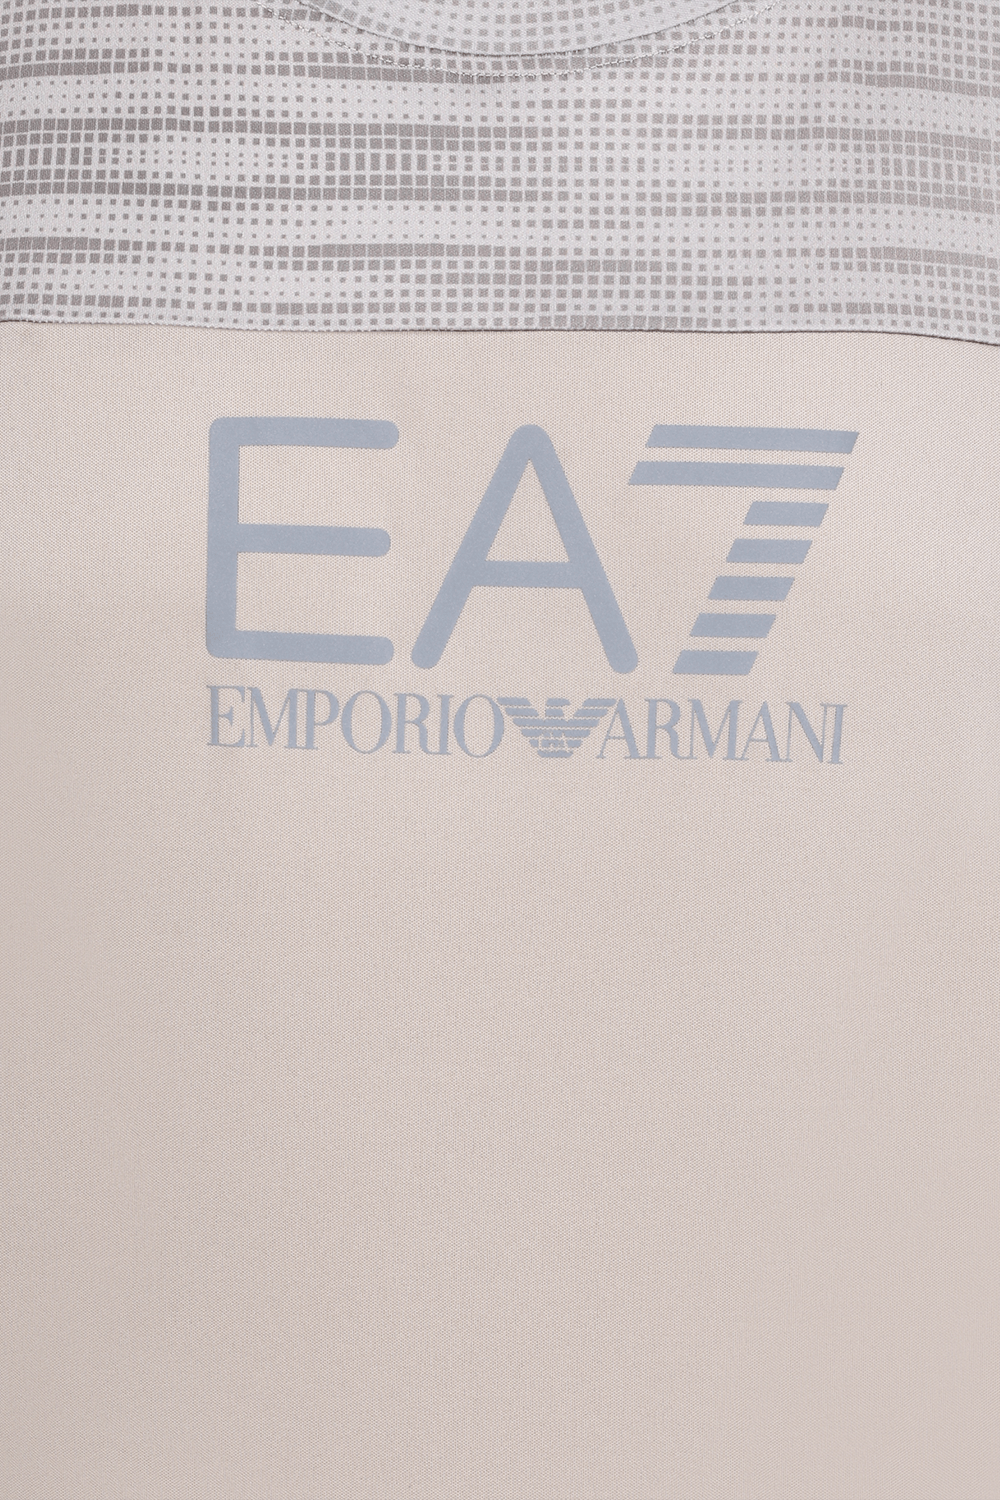 חולצת לוגו טי EA7